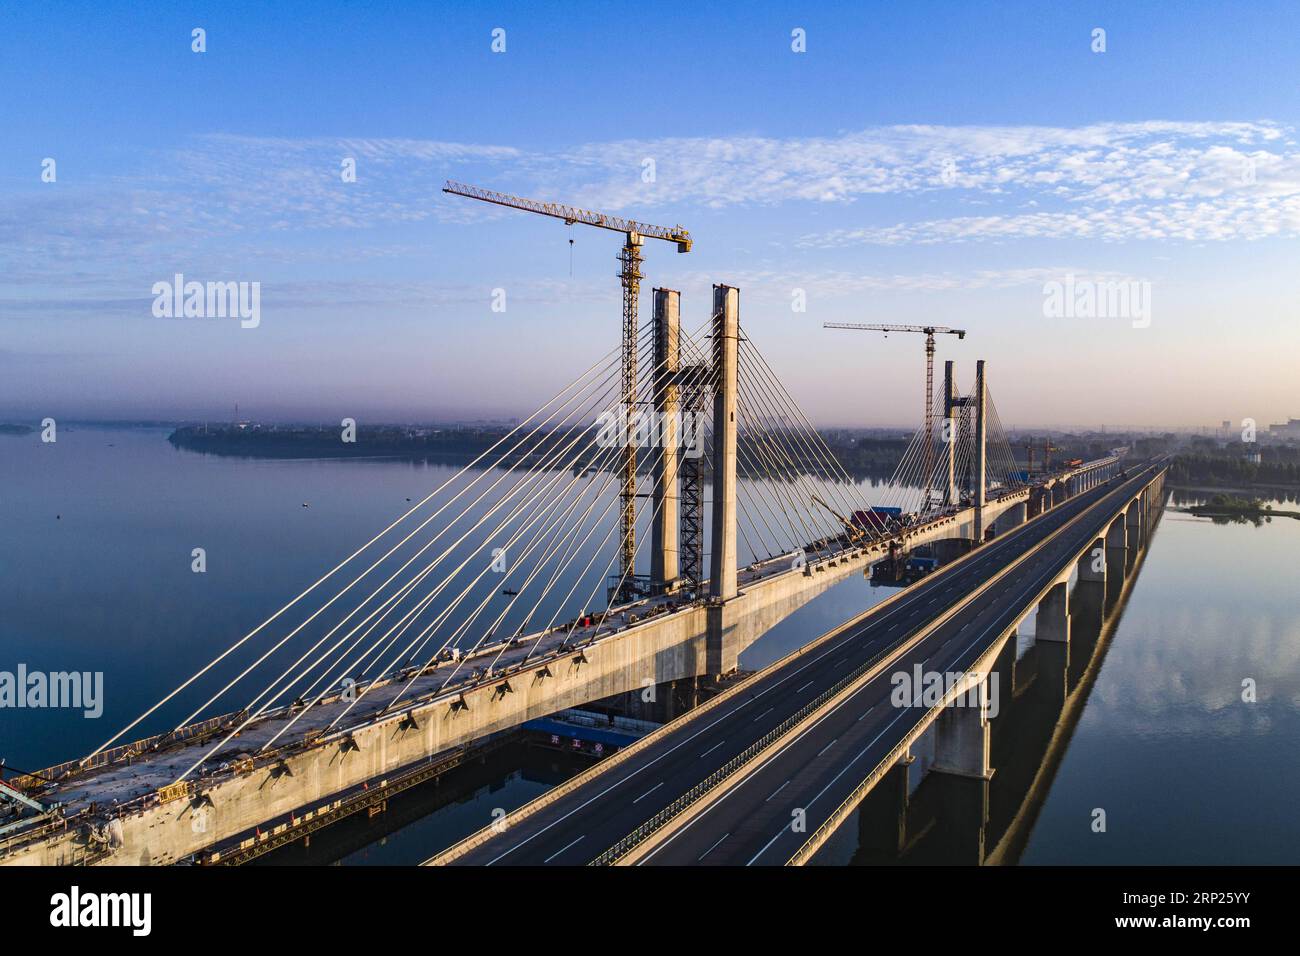 (180820) -- XIANGYANG, 20 août 2018 (Xinhua) -- une photo aérienne prise le 20 août 2018 montre le chantier de construction du pont Hanjiang du chemin de fer de Menghua traversant la rivière Hanjiang dans la ville de Xiangyang, dans la province du Hubei en Chine centrale. Le pont Hanjiang du chemin de fer de Menghua a terminé son installation de câbles lundi. Le grand pont de 5 242 mètres est une partie importante du chemin de fer de Menghua, une route stratégique de transport du charbon de 1 817 kilomètres reliant la région autonome de Mongolie intérieure, riche en charbon du nord de la Chine, au centre et au sud de la Chine. (Xinhua/Jin Wei) (hxy) CHINA-HUBEI-RAILWAY-CONSTRUCTION (CN Banque D'Images